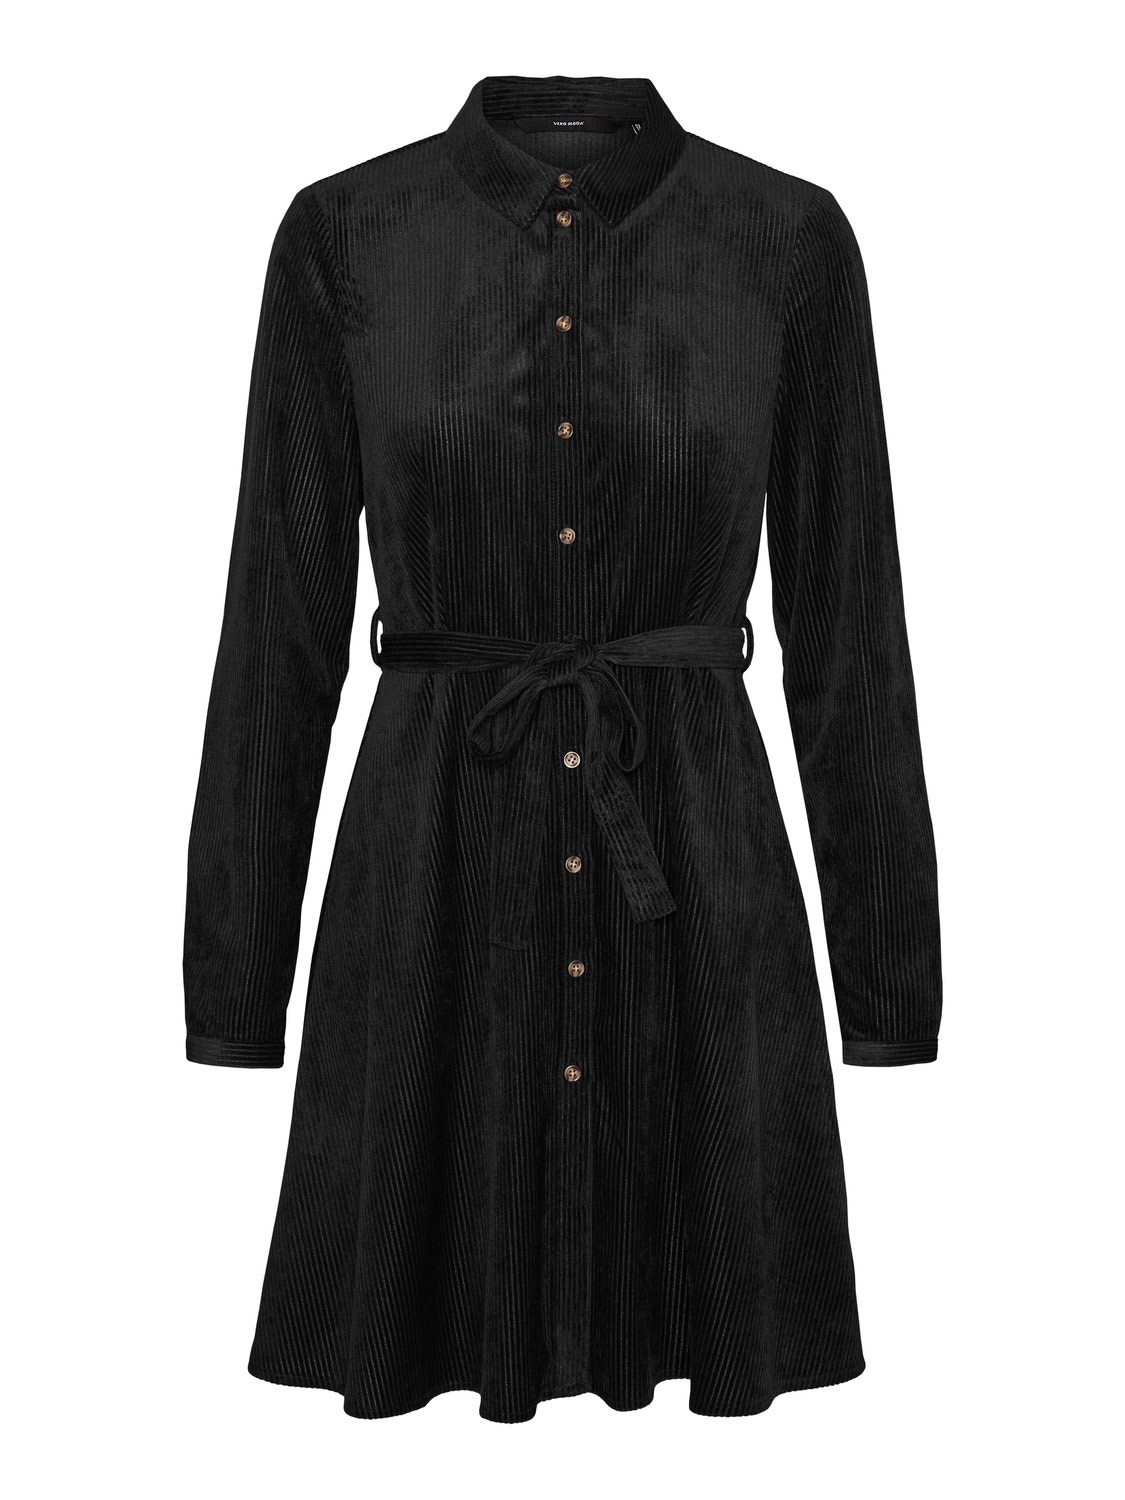 Vero Moda VMNINA Short dress -Black - 10306592